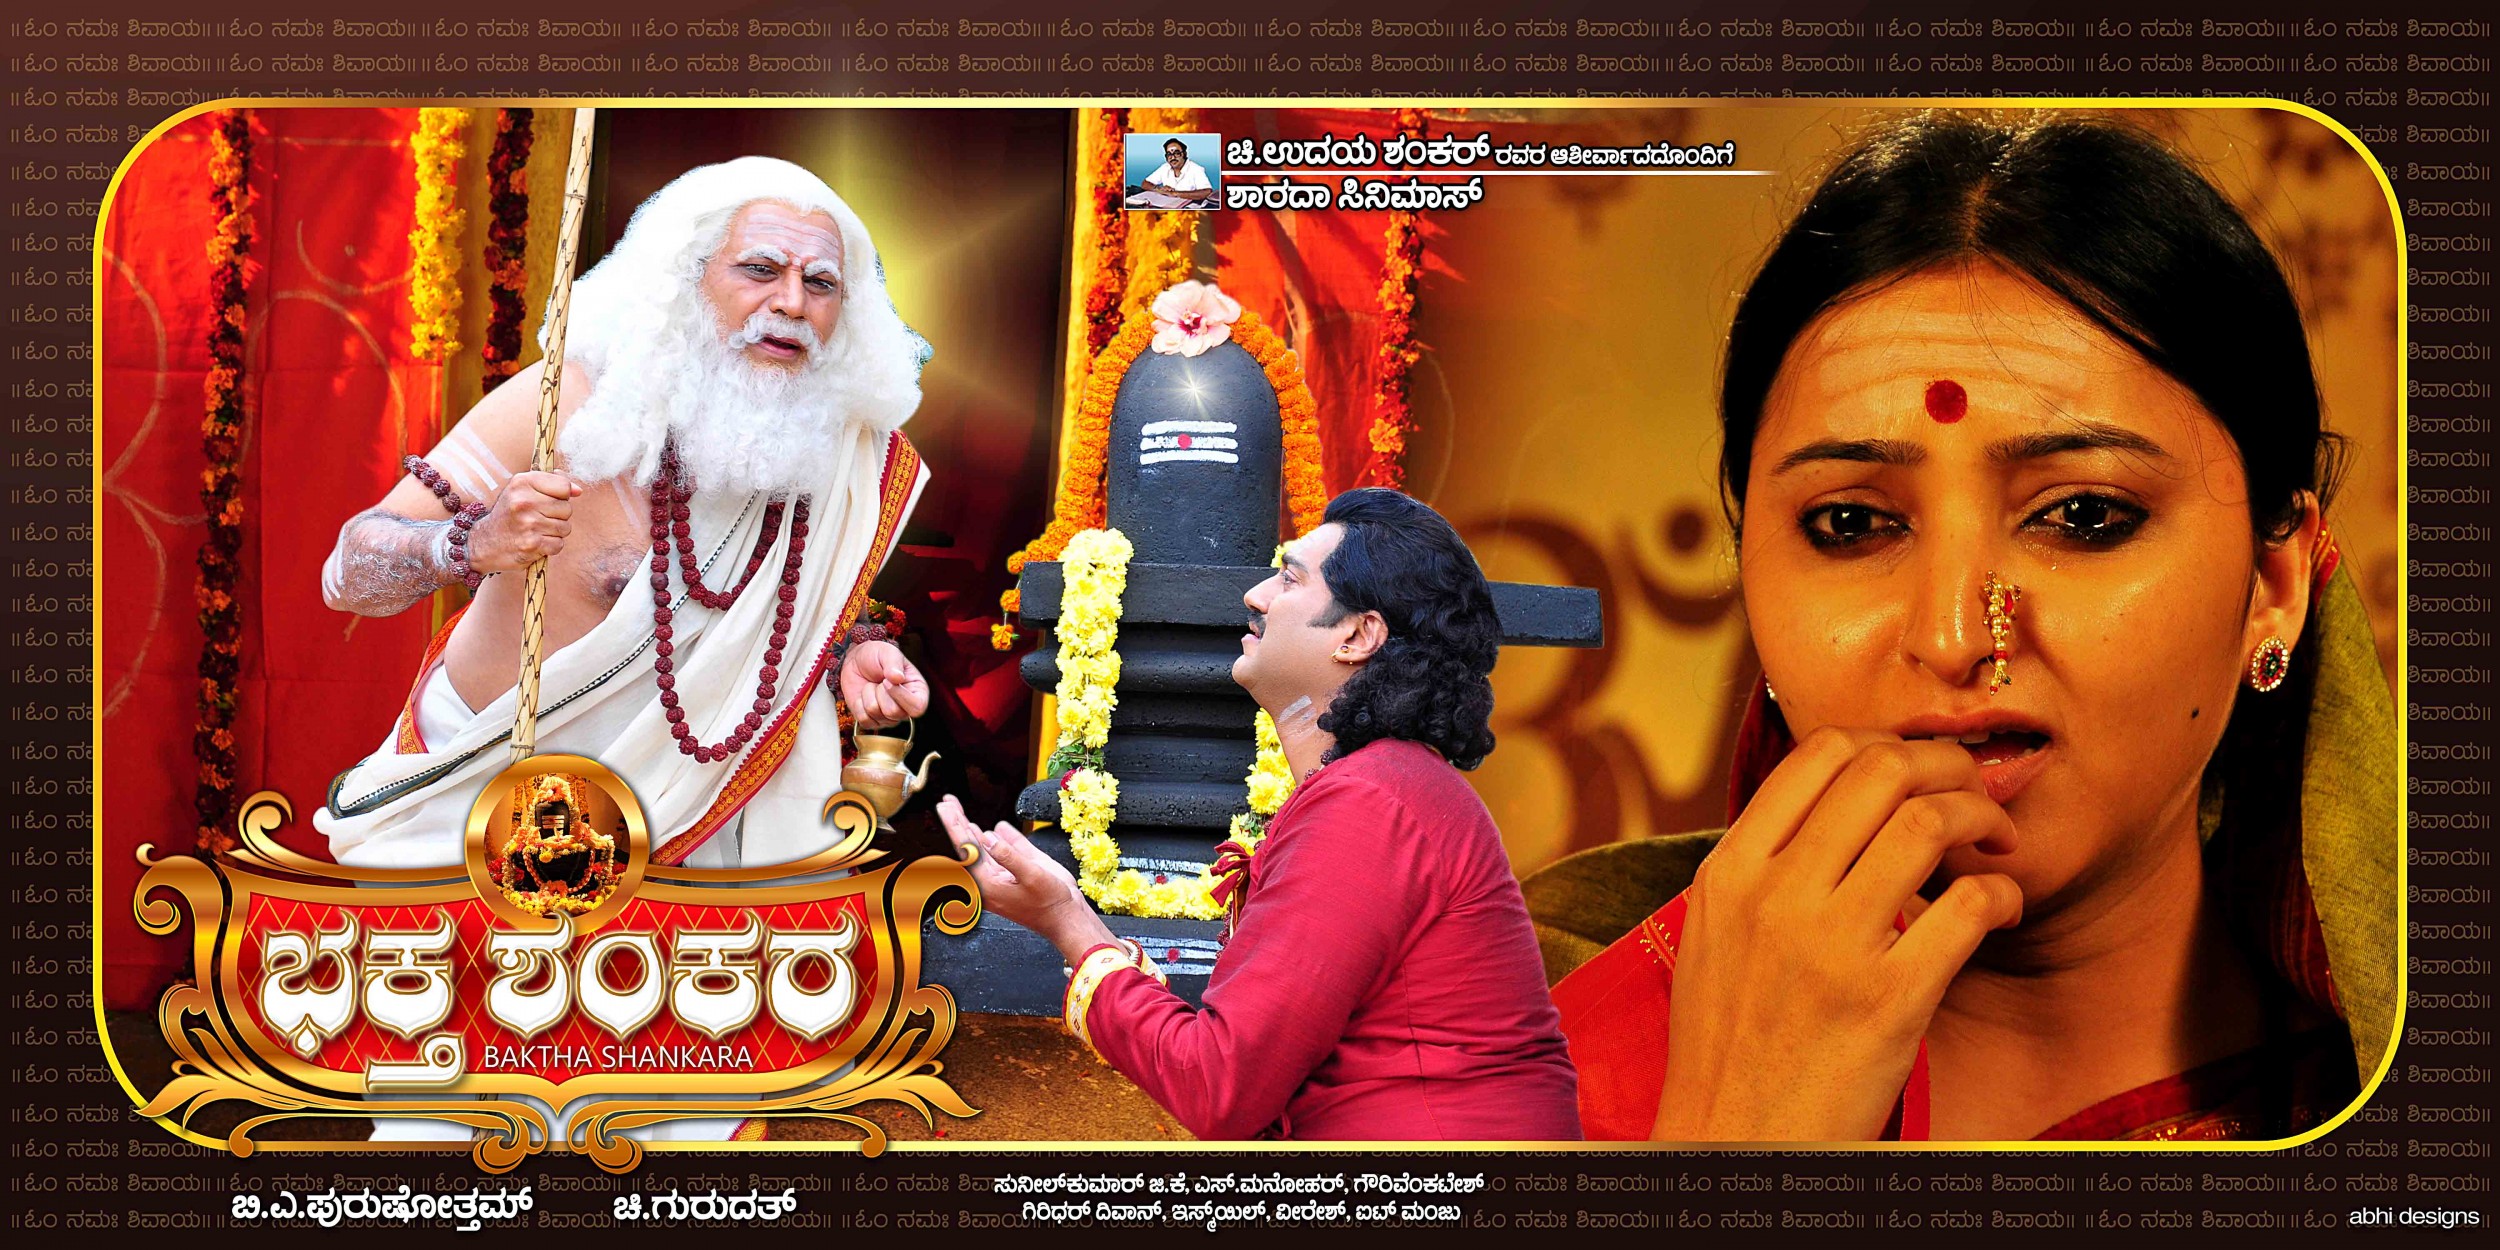 Mega Sized Movie Poster Image for Baktha Shankara (#5 of 10)